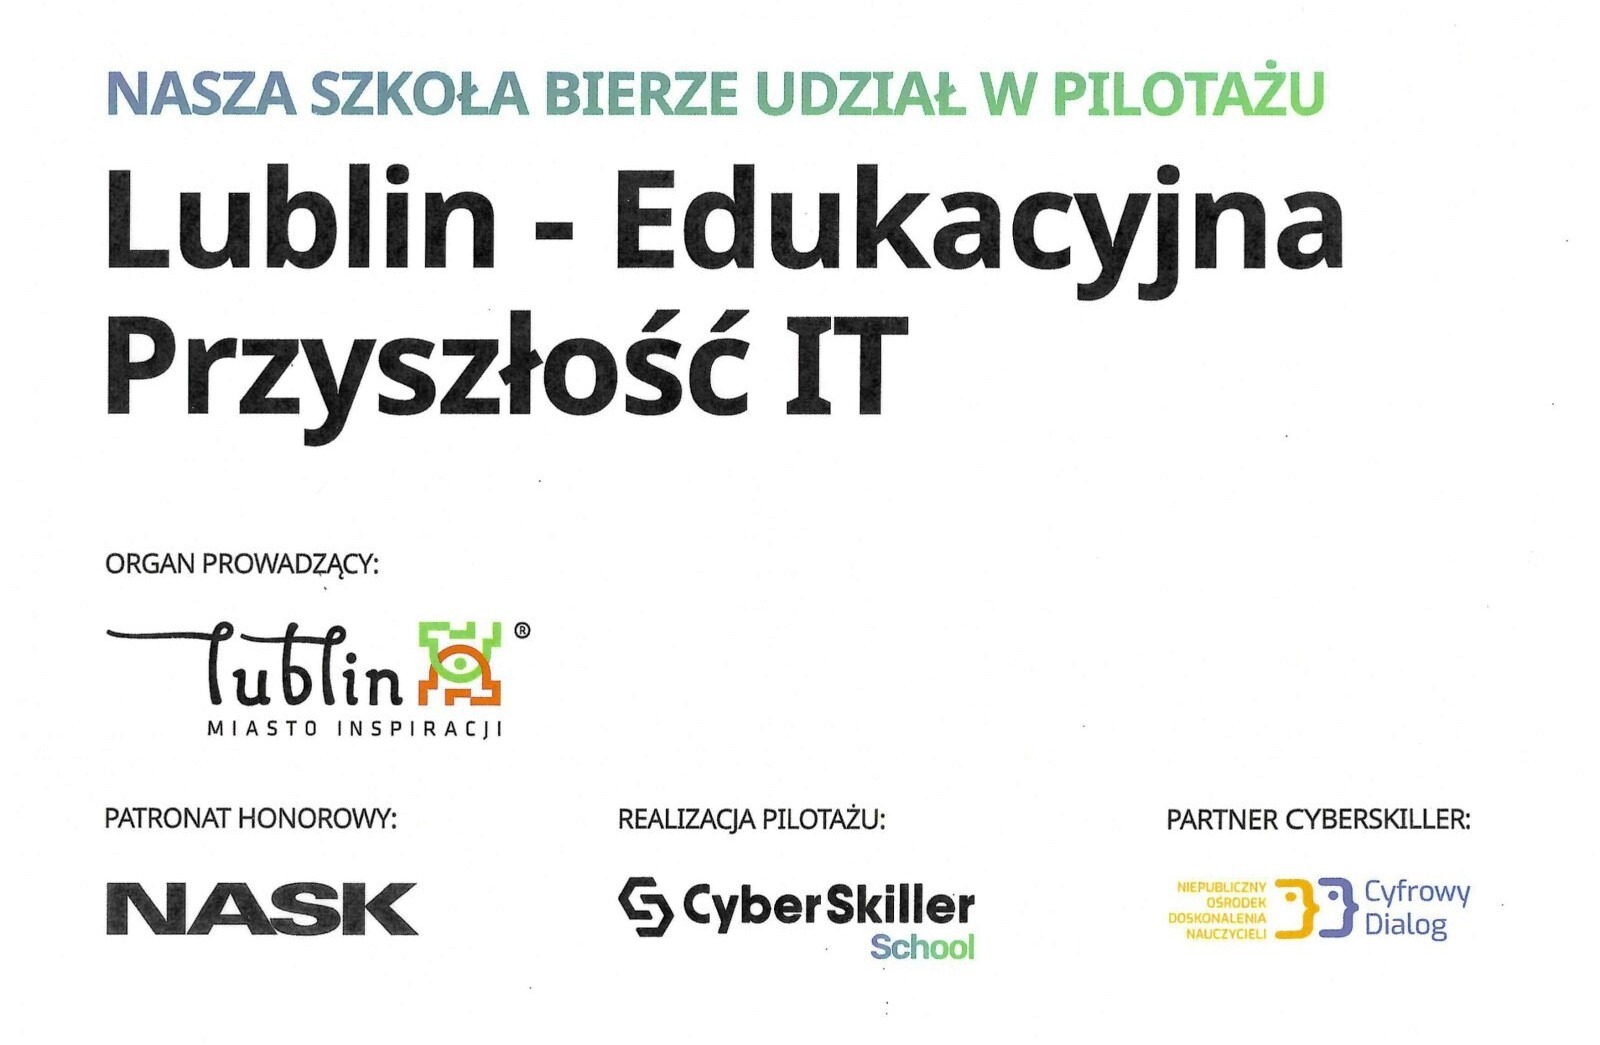 "Lublin - Edukacyjna Przyszłość IT" - Obrazek 1